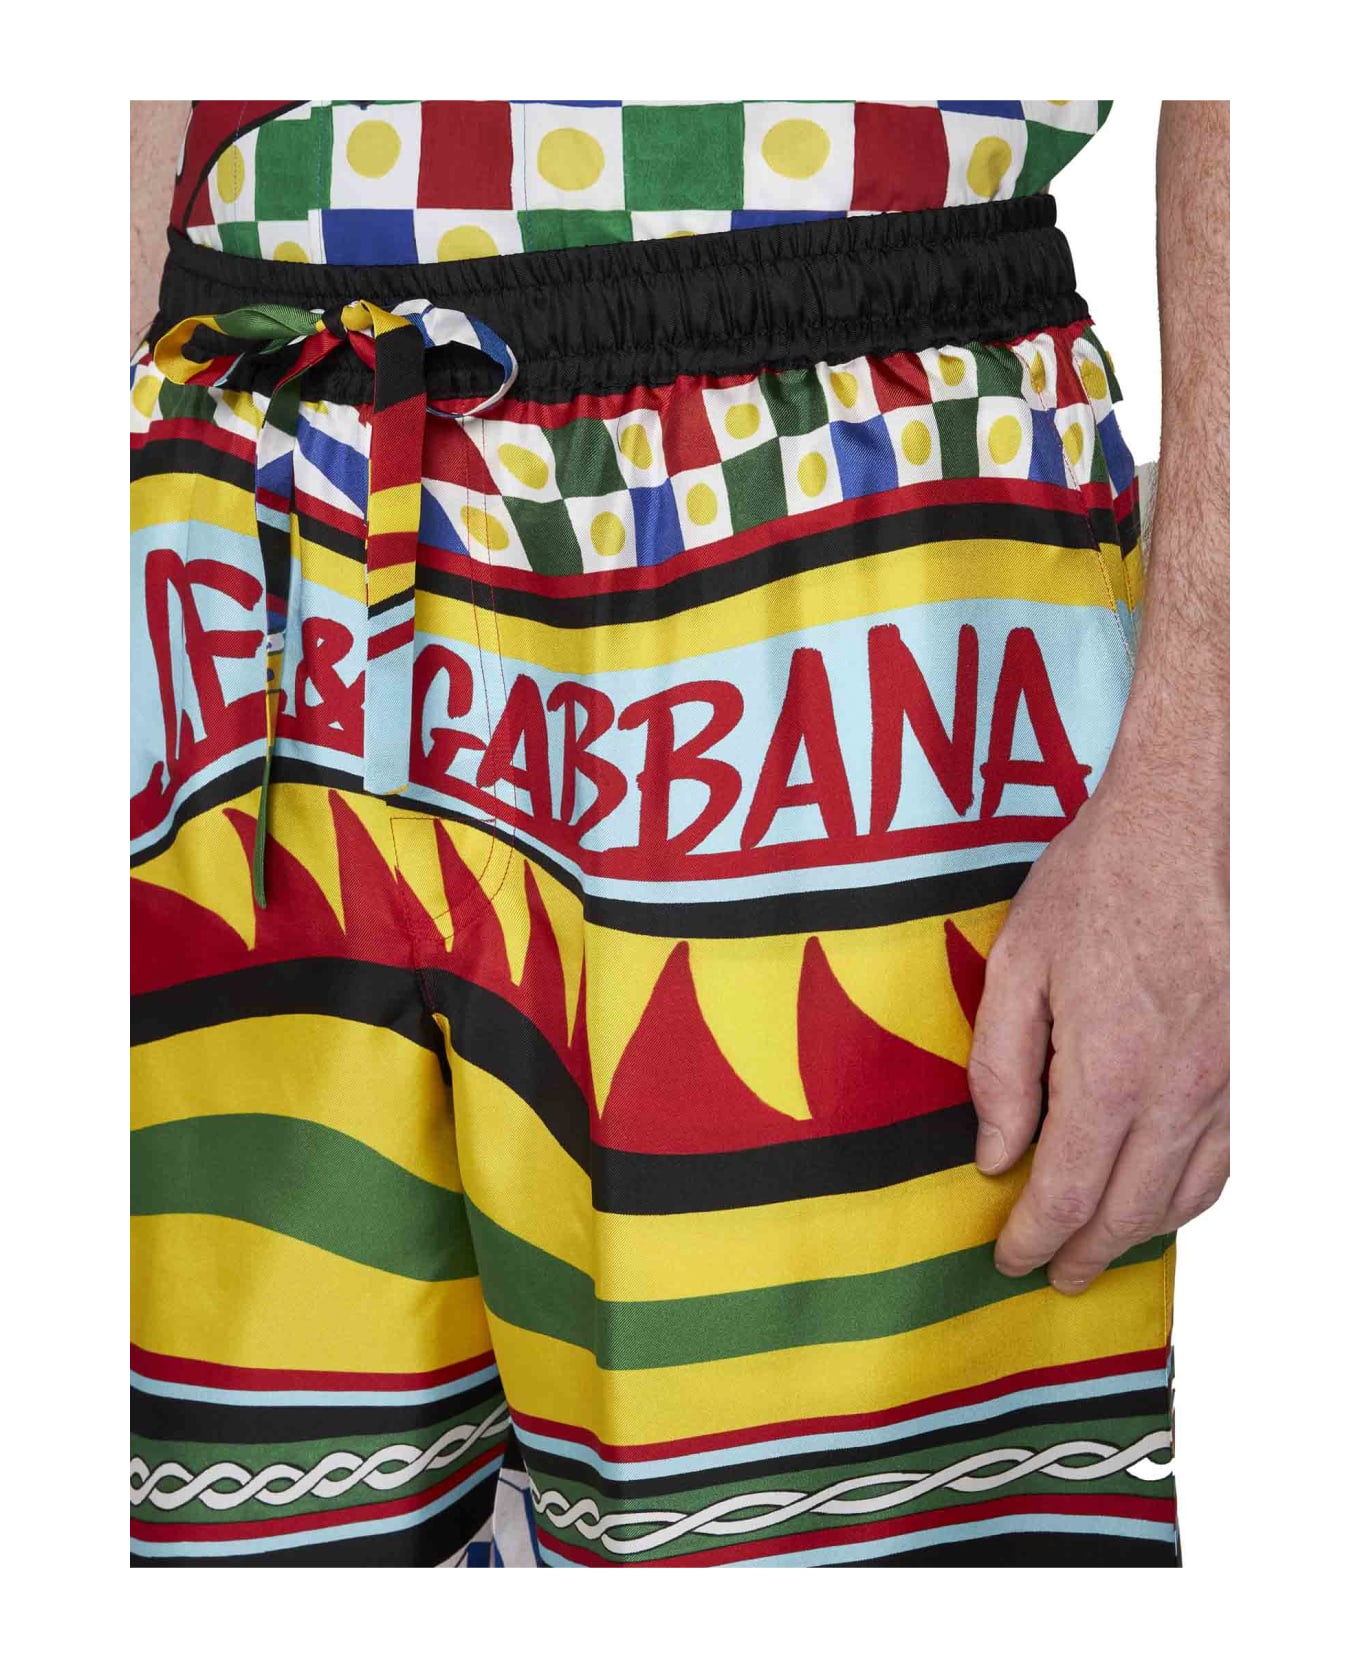 Dolce & Gabbana Printed Satin Bermuda Shorts - Carretto